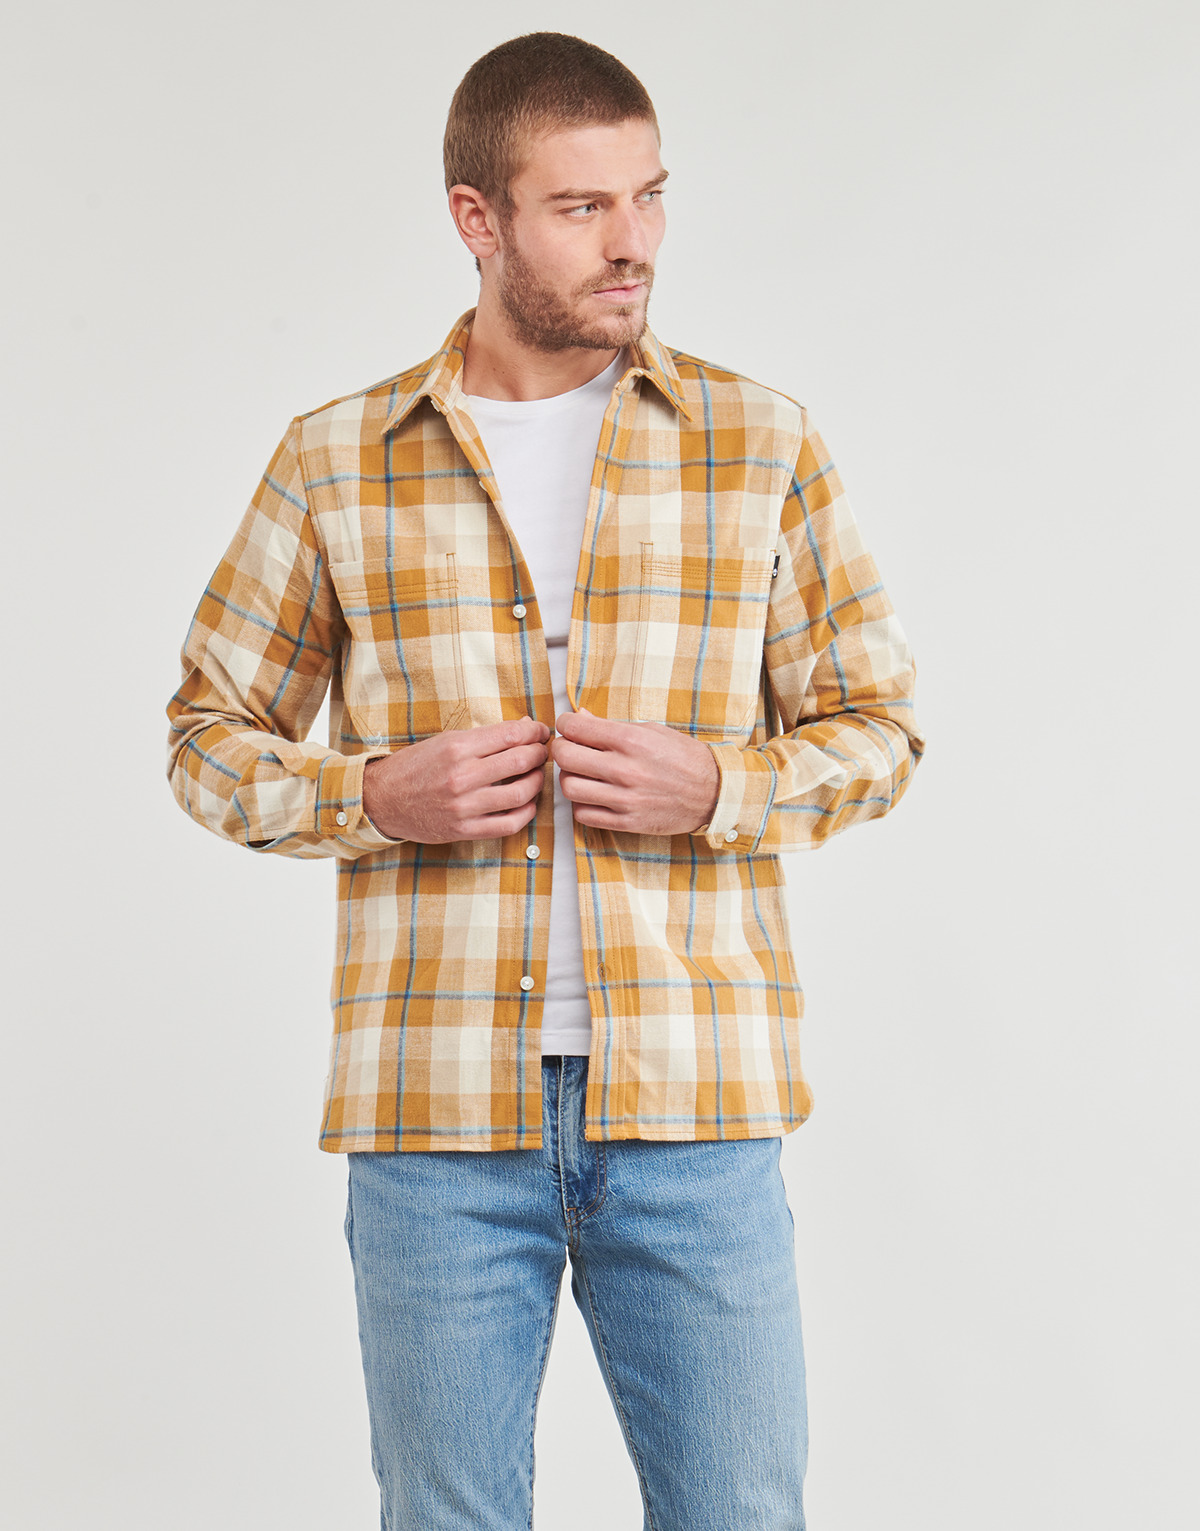 Abbigliamento Uomo Camicie maniche lunghe Timberland Windham Heavy Flannel Shirt Regular Multicolore